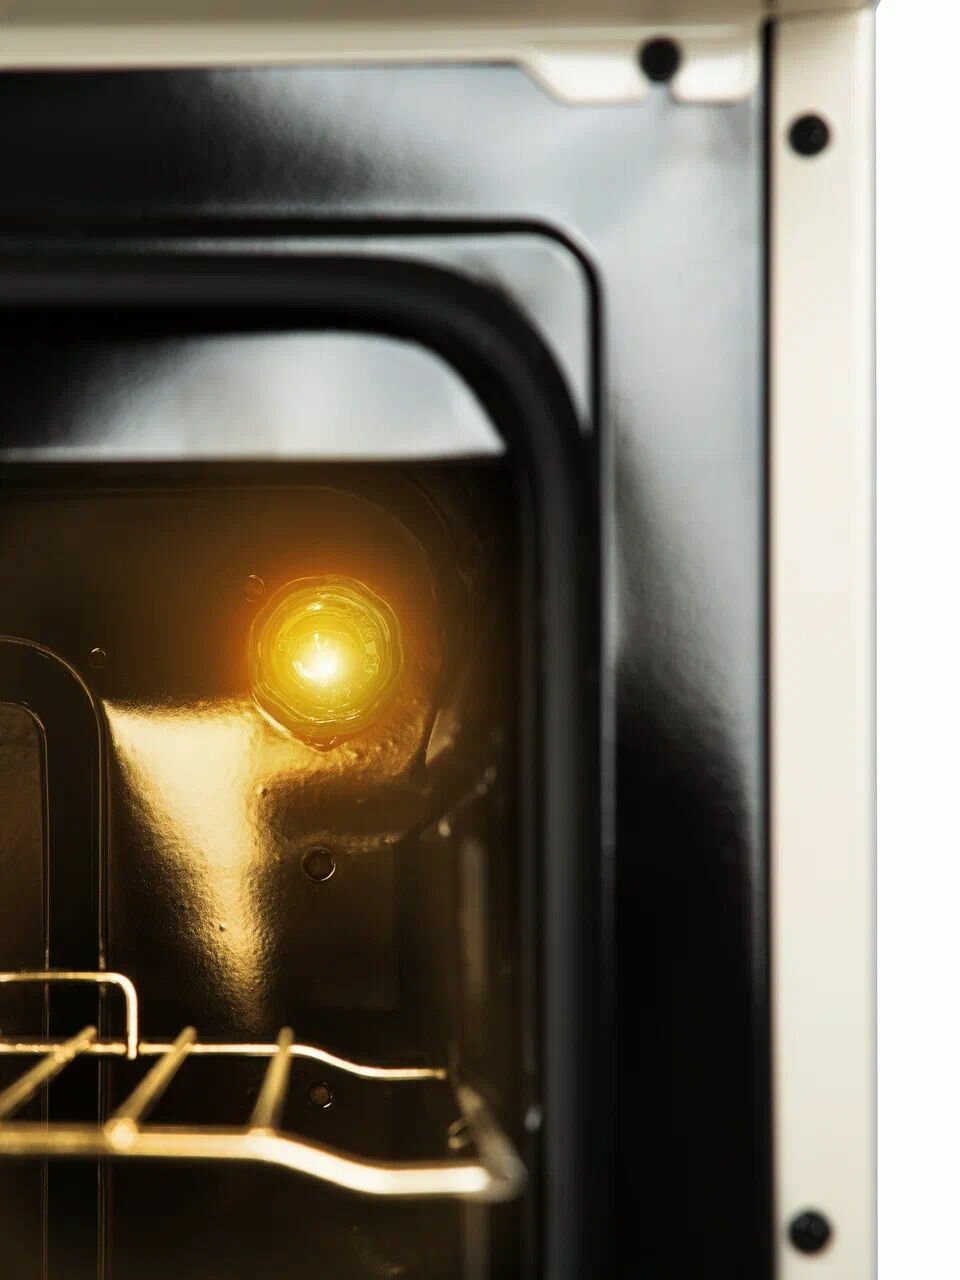 Газовая плита Danke 6060.03г Ретро Бежевый цвет в размере 60x60см с газовой духовкой (чугунные решетки) - фотография № 6